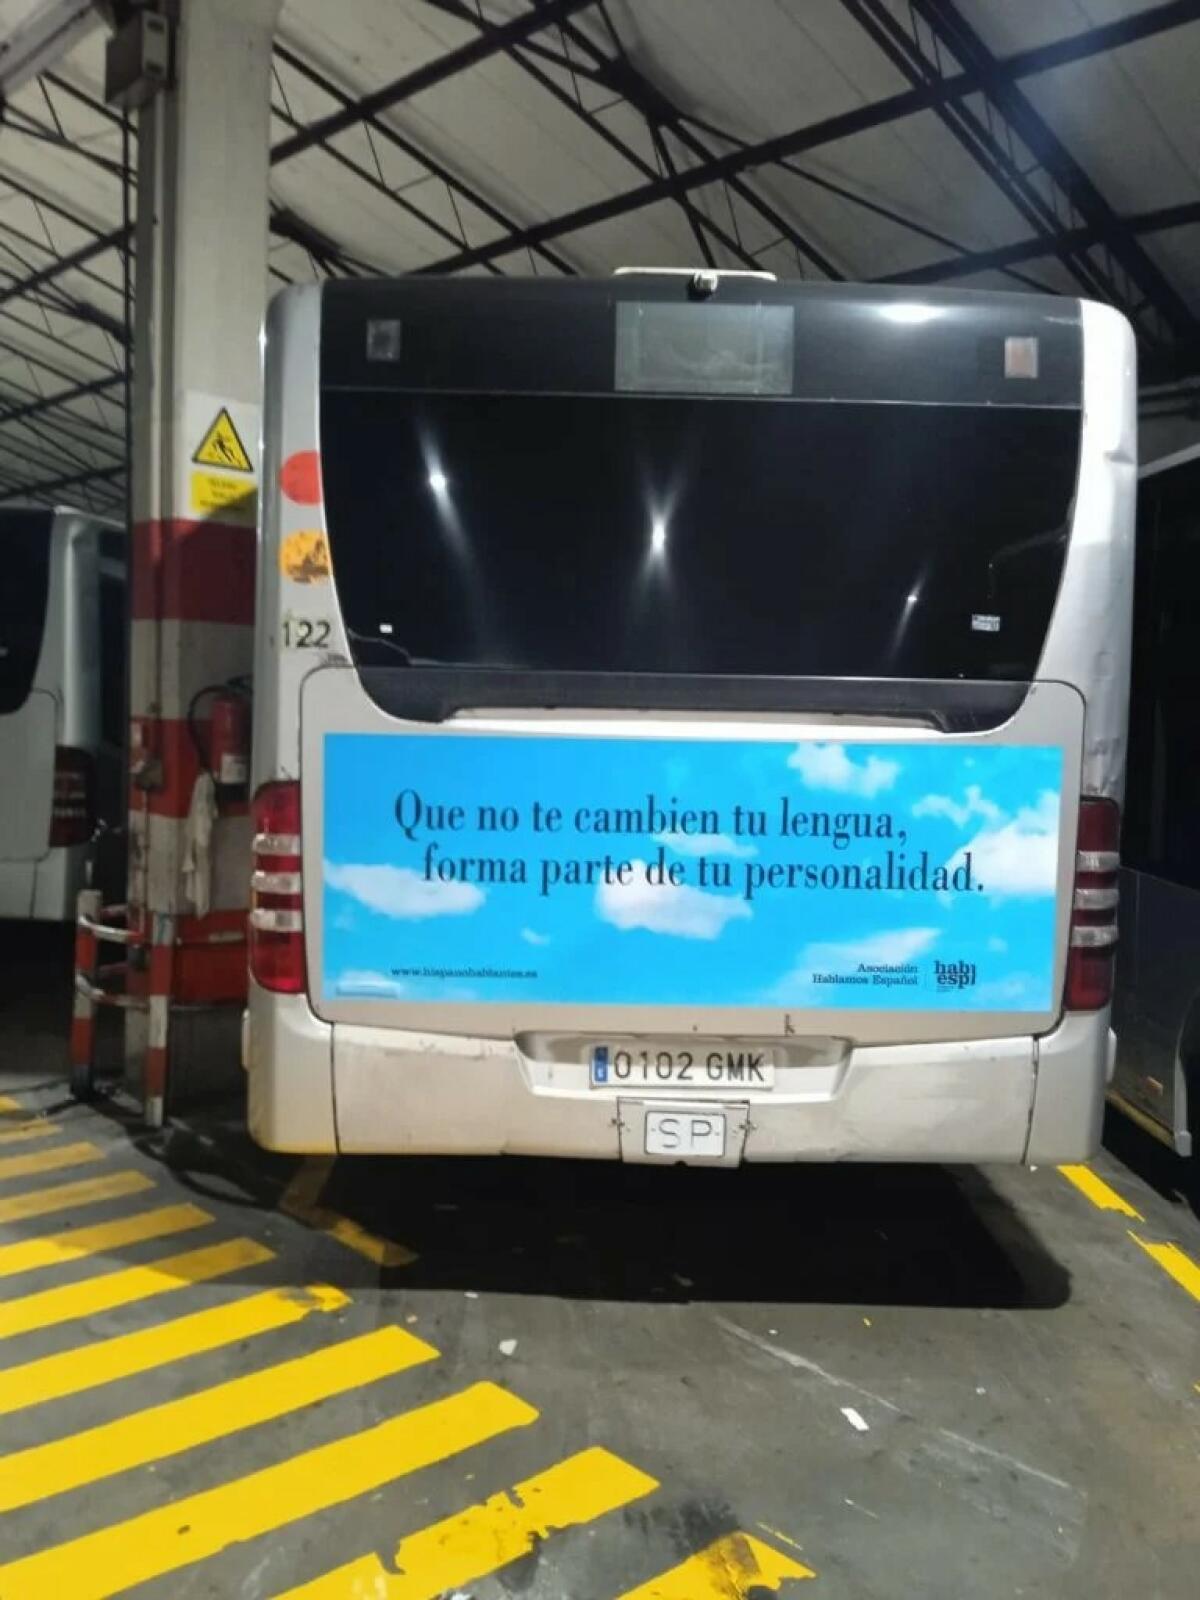 El Ayuntamiento de Barcelona (PSC) y el de Palma (PP) vetan el bus de Hablamos Español con el lema “Que no te cambien tu lengua, forma parte de tu personalidad.”